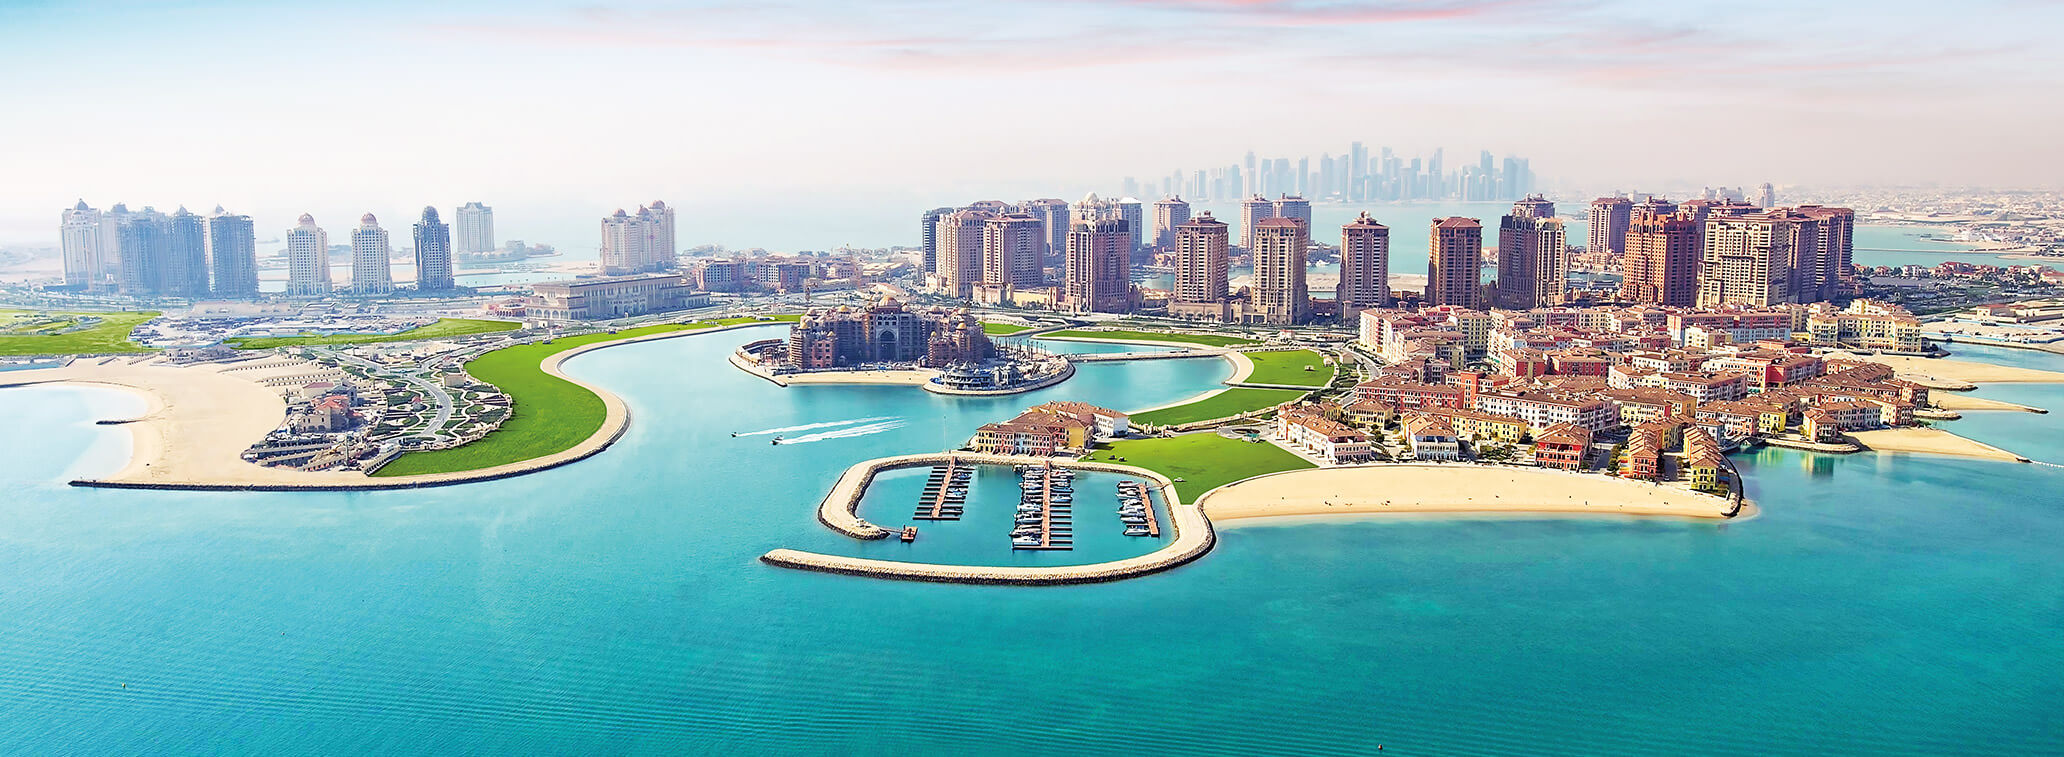 Σε ισχύ παραμένουν οι κυρώσεις σε βάρος του Κατάρ